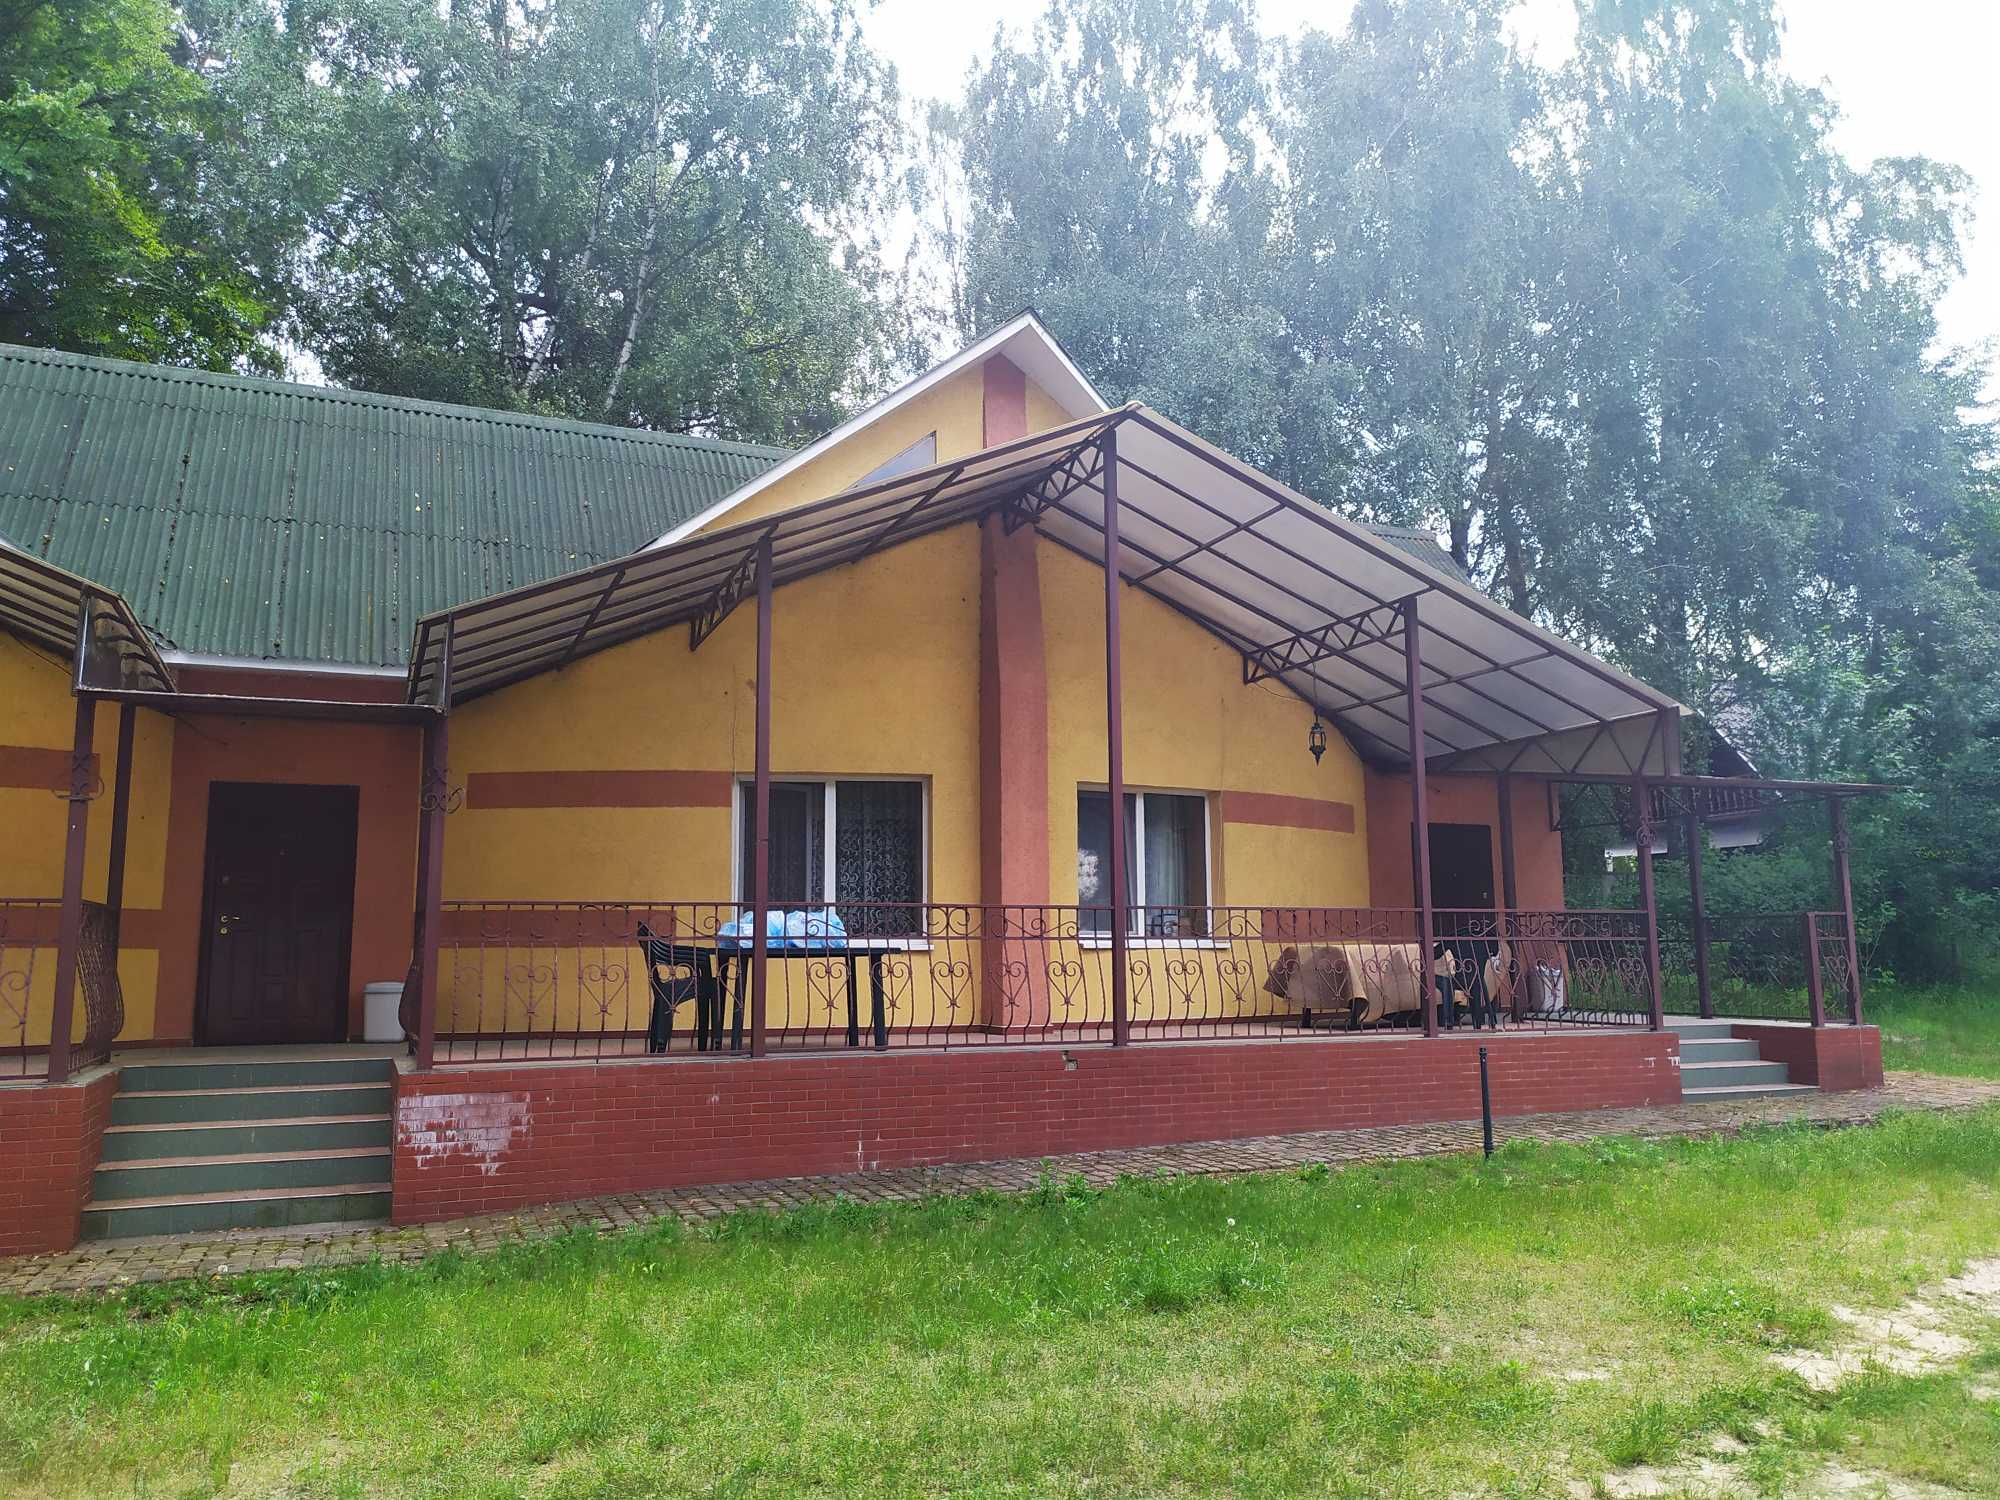 Продаж житлового будинку відпочинку на березі Хрінницького водосховища